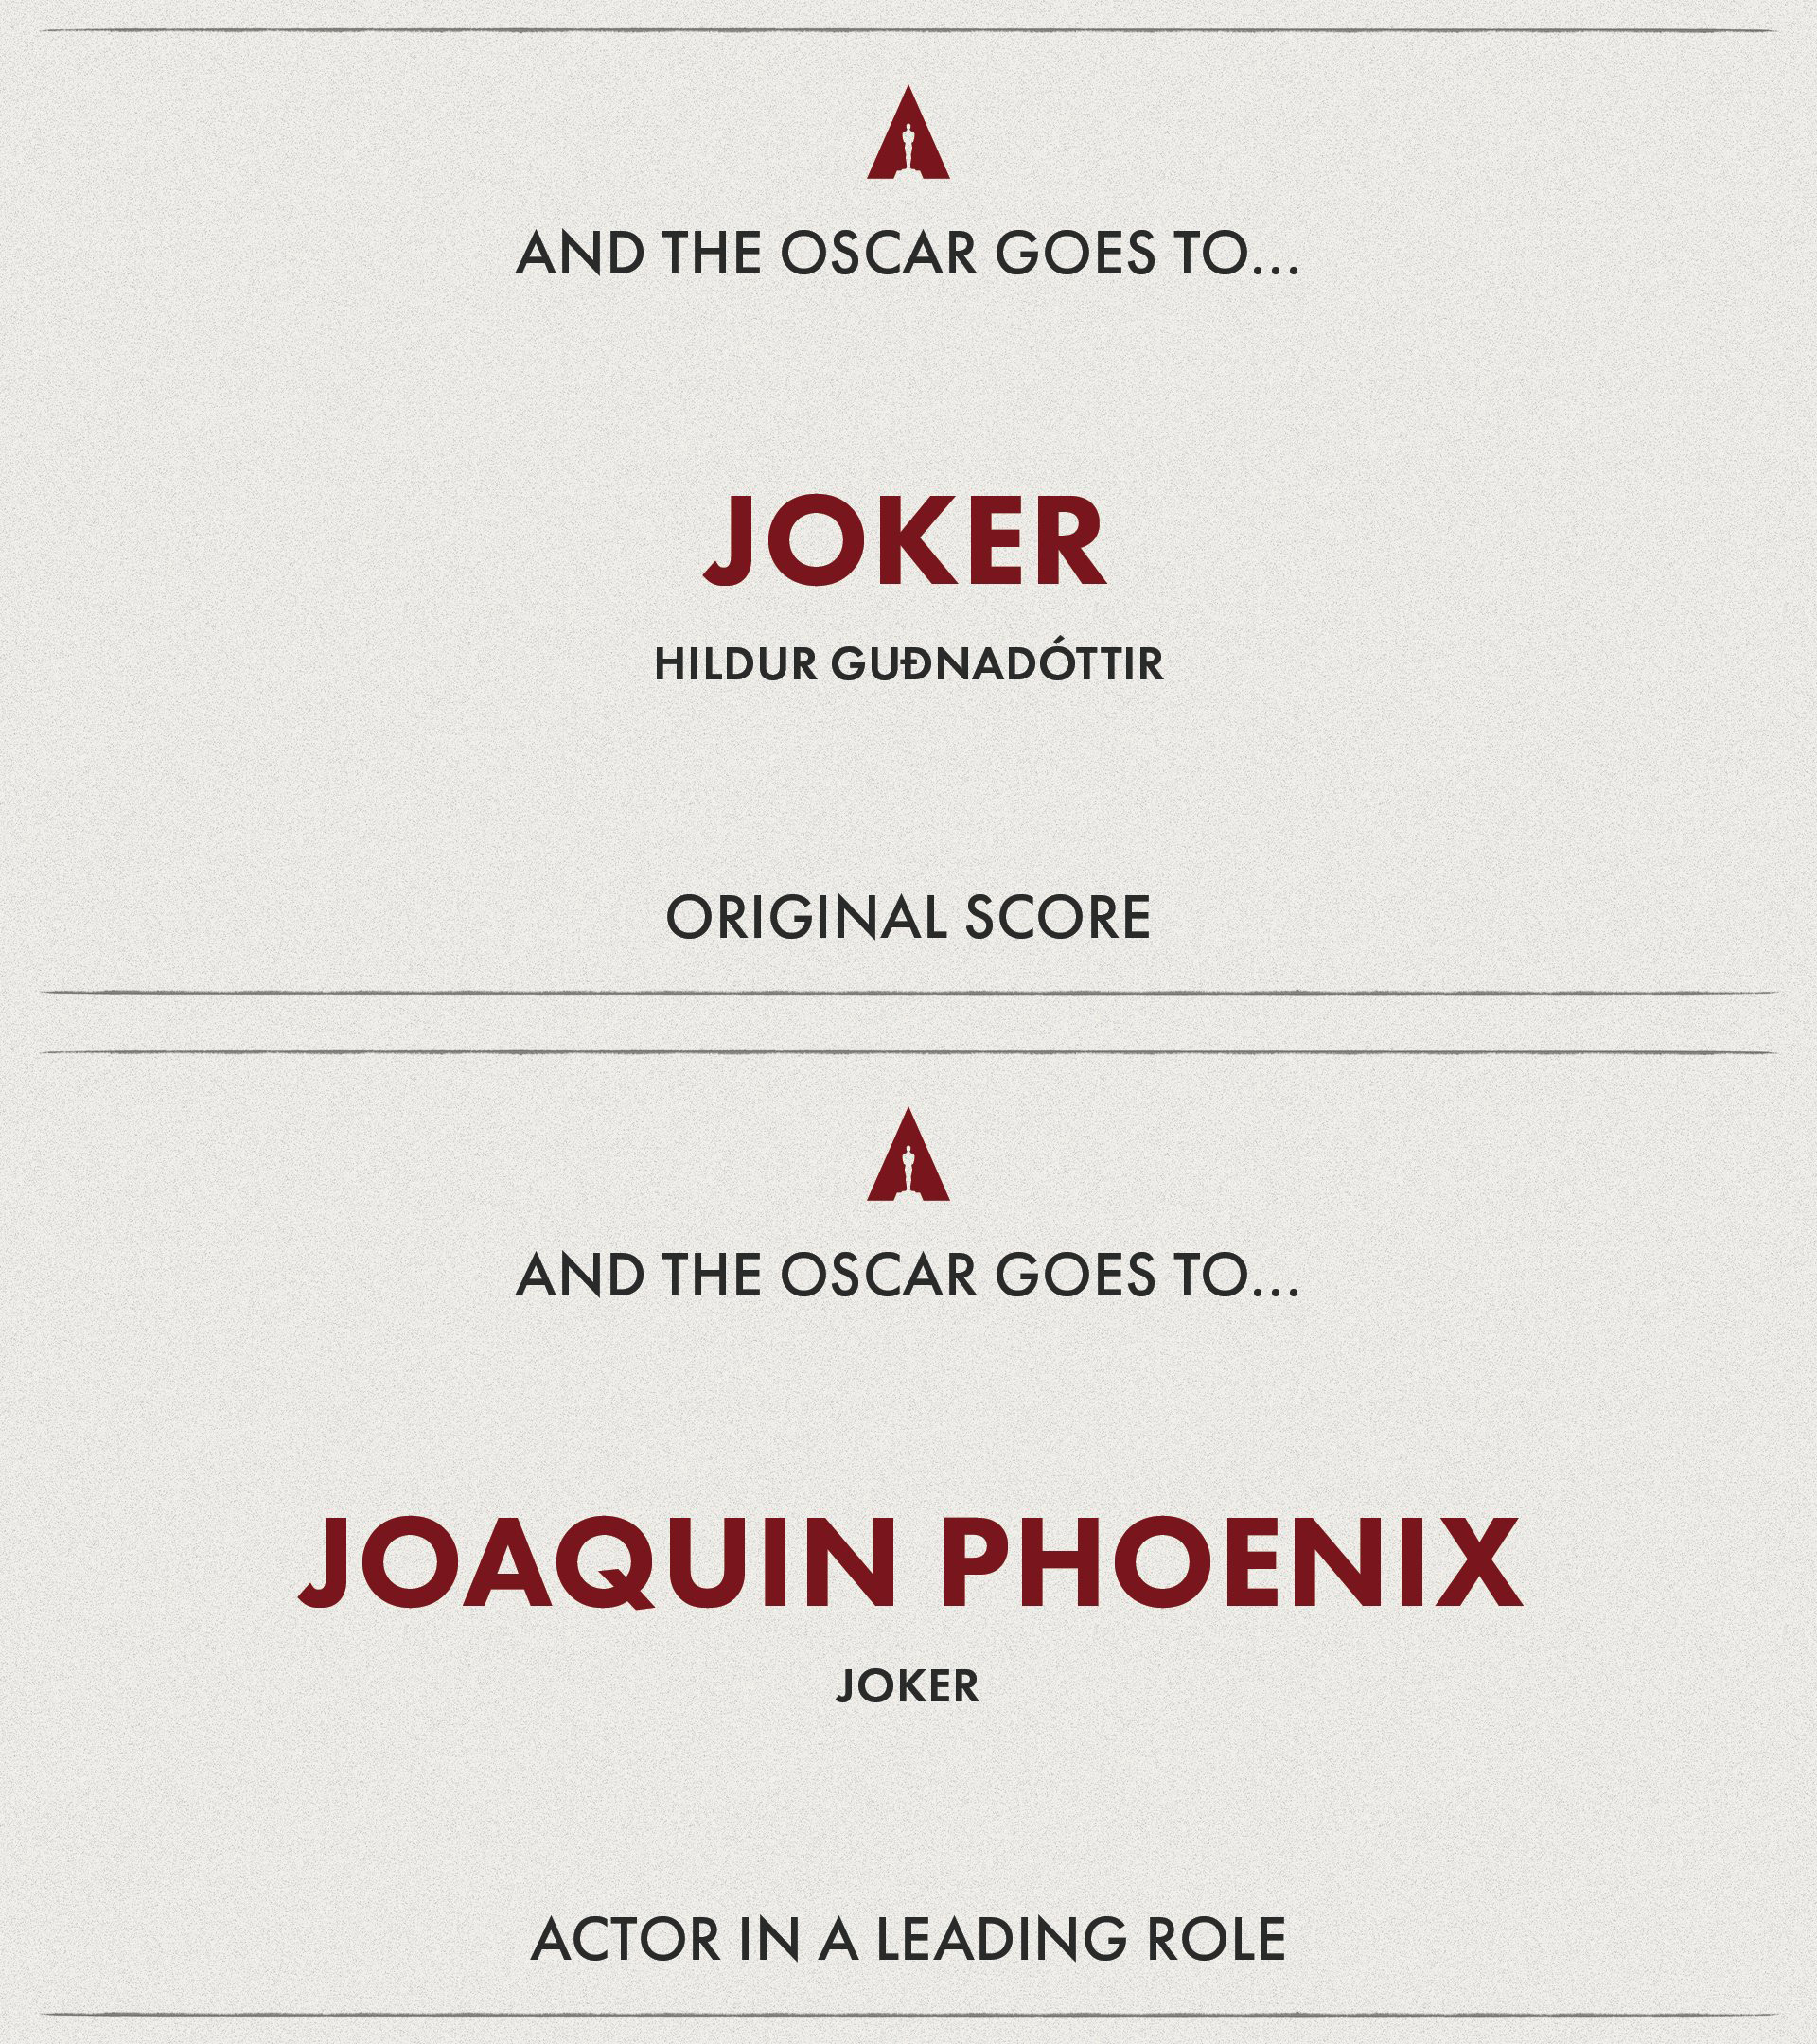 Oscar 2020: Đè bẹp đối thủ với 2 giải Oscar, Joker trở thành niềm tự hào của hãng Warner Bros - Ảnh 2.